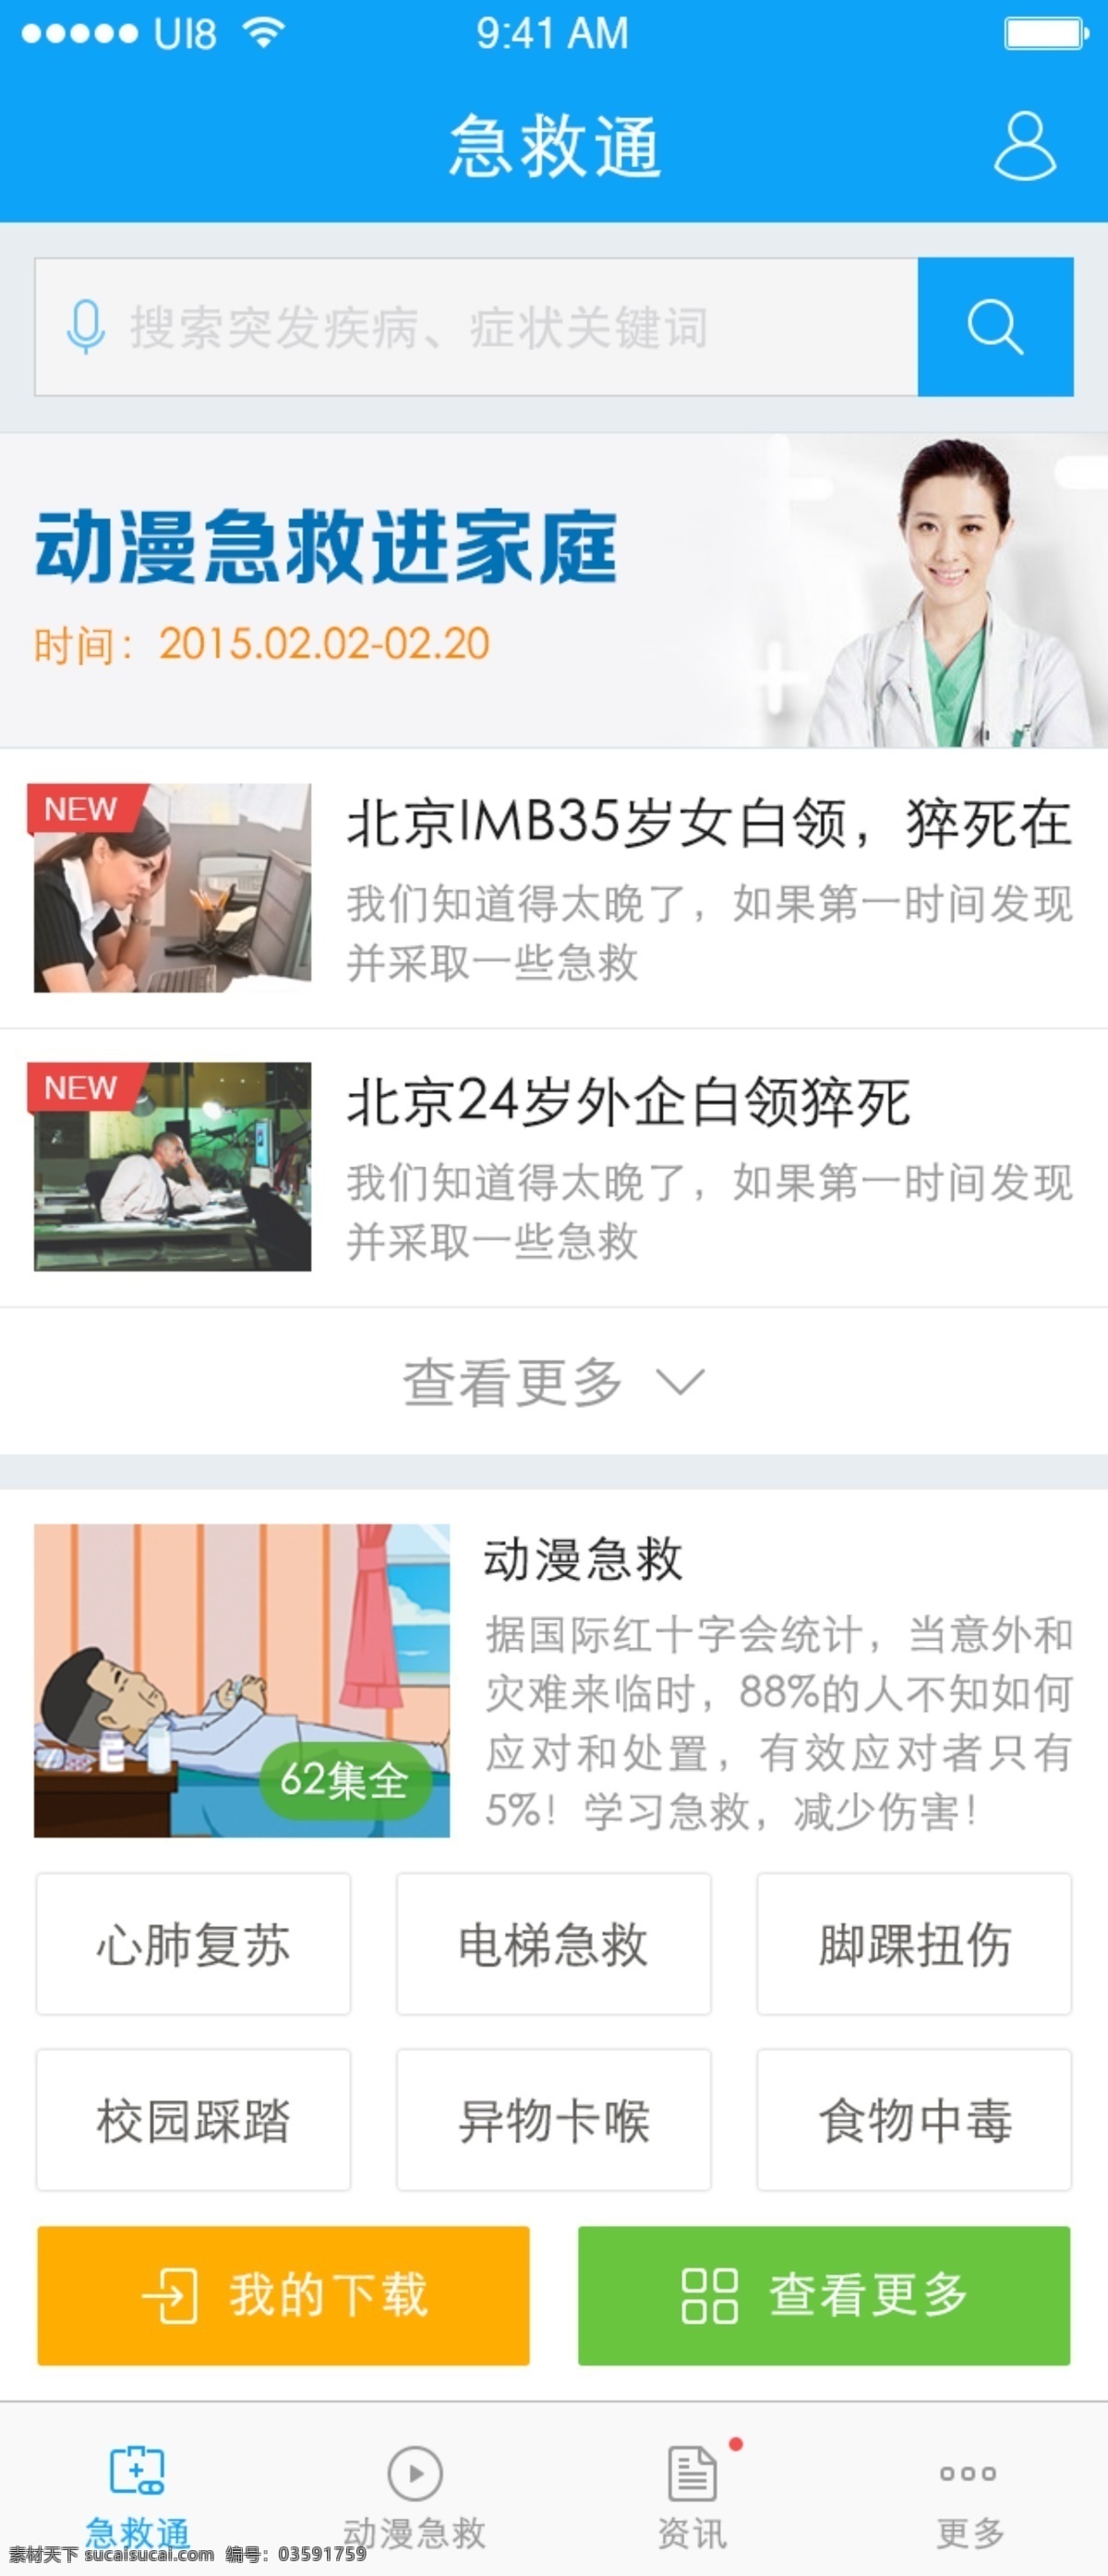 动漫 急救 app gui ui 扁平化 简洁 蓝色 视频 手机ui 网页设计 原创设计 原创网页设计